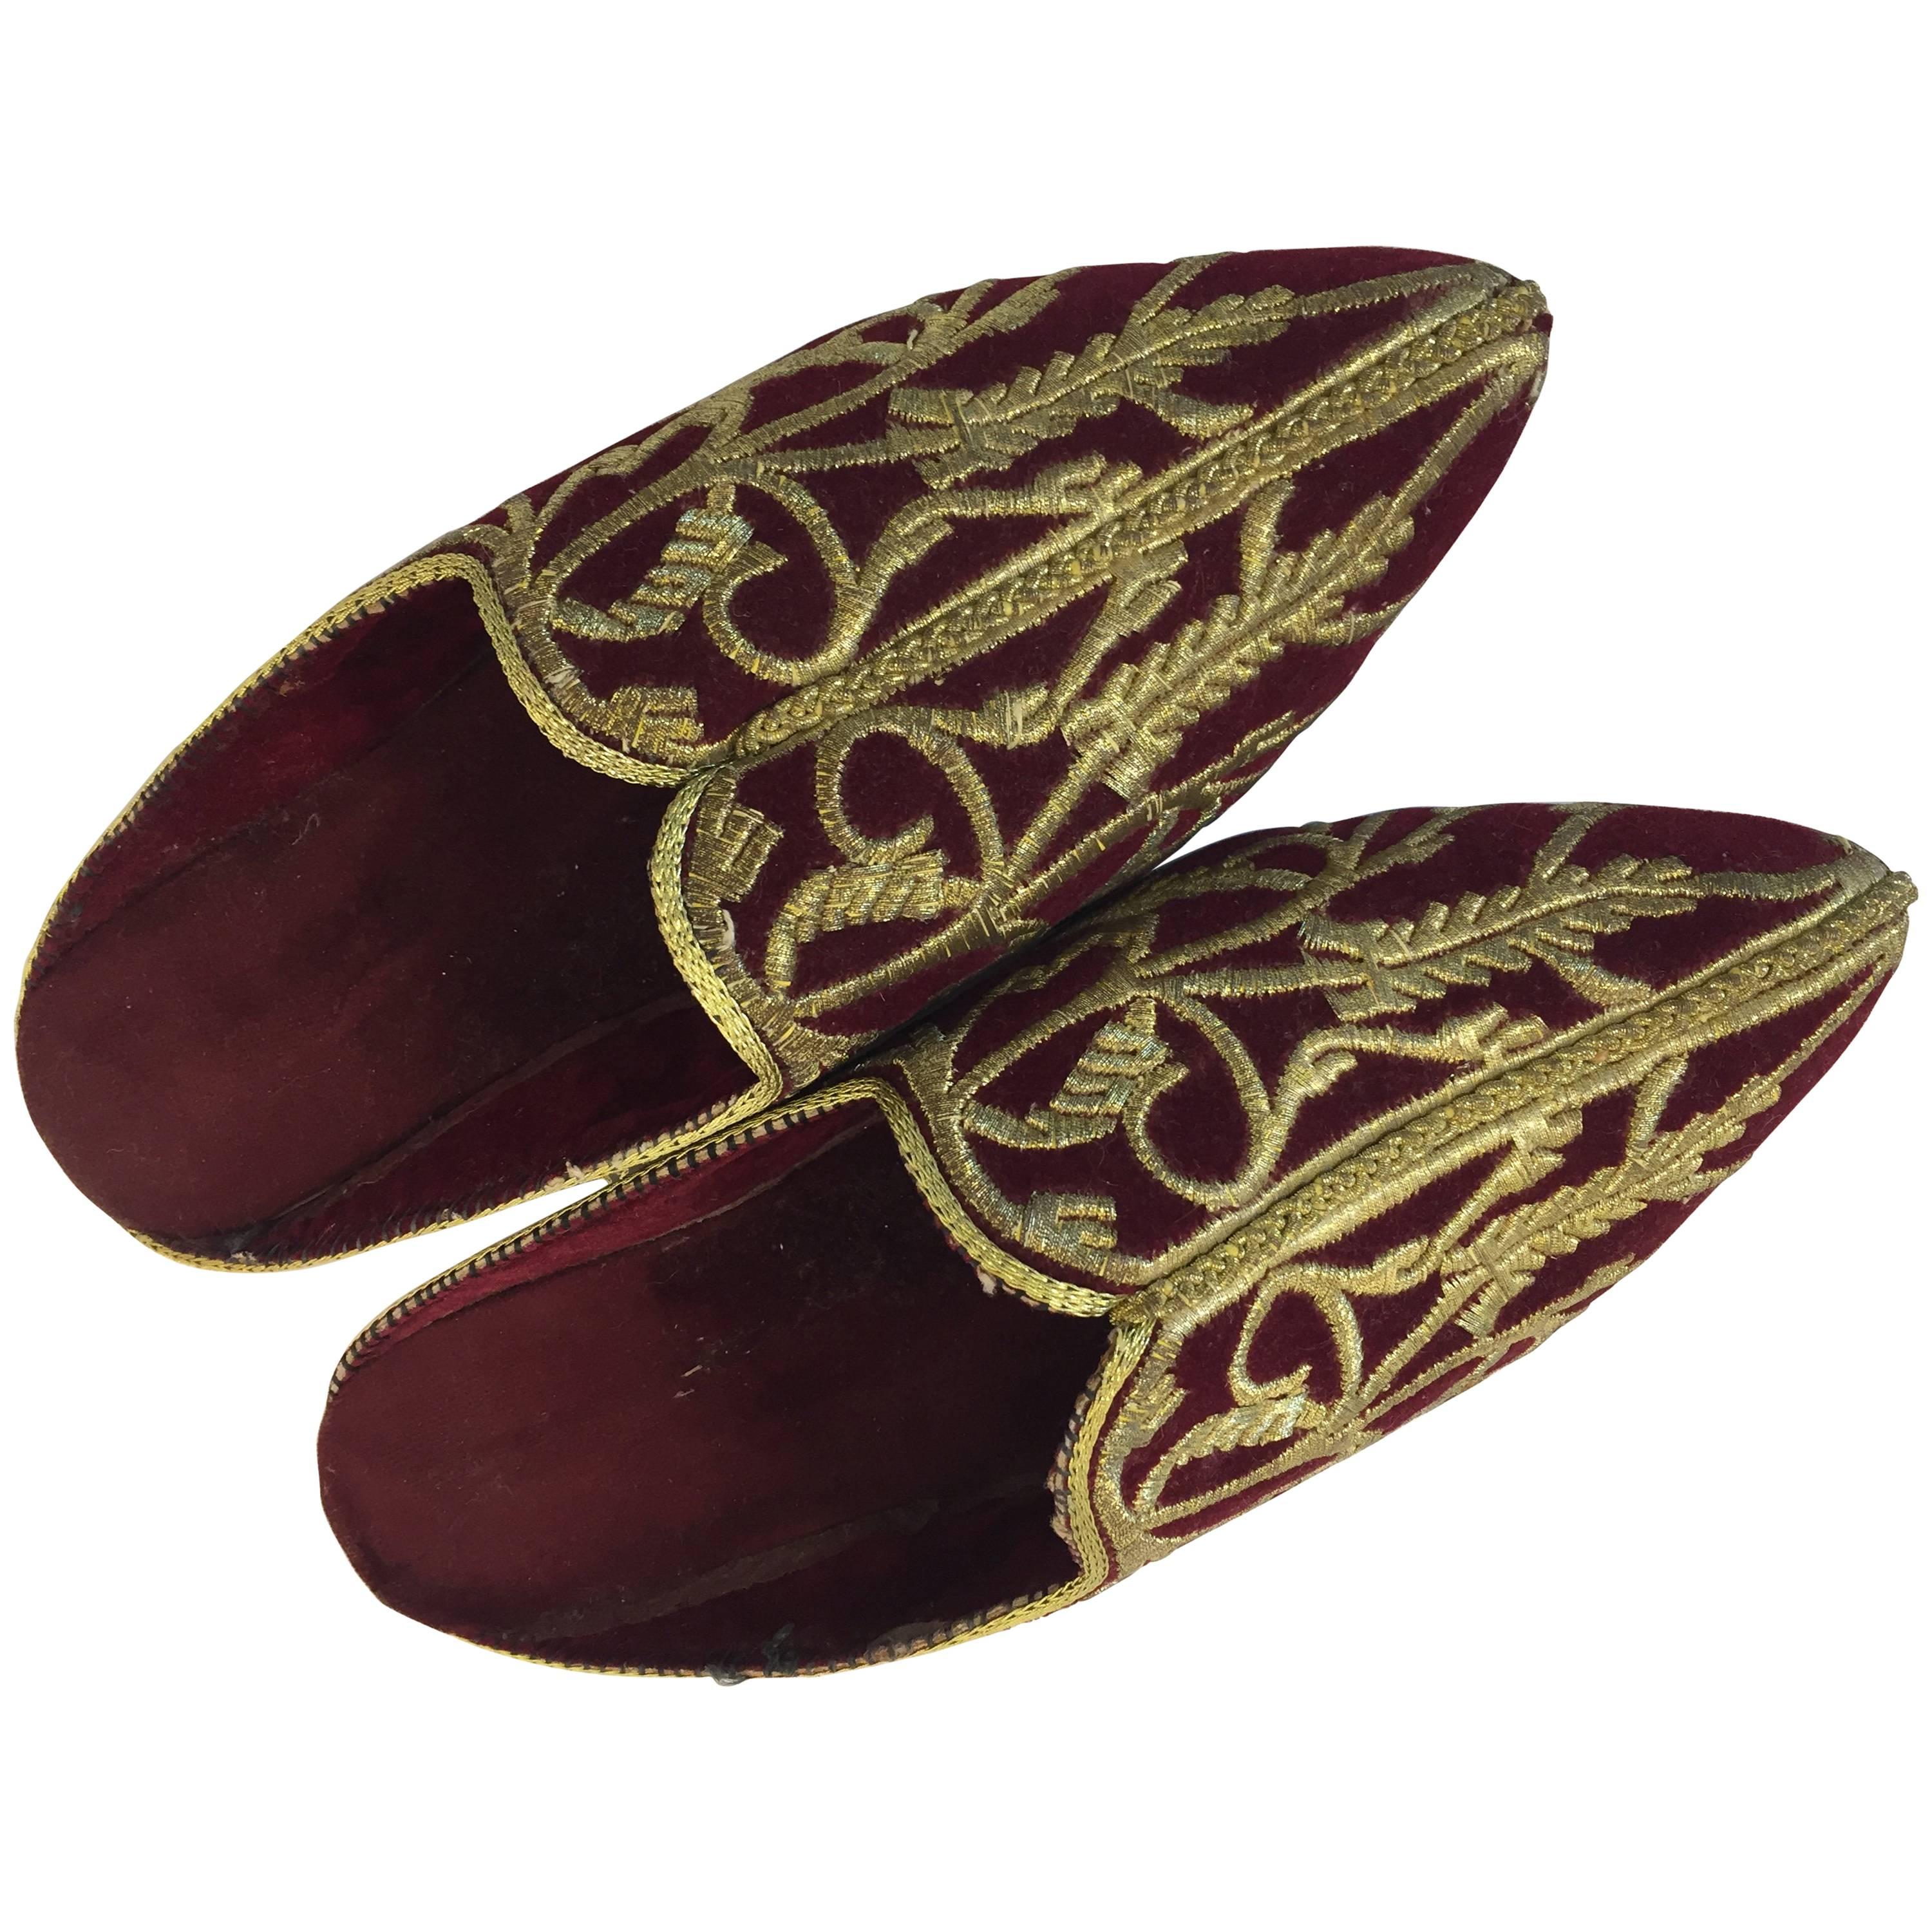 Chaussures pantoufles en velours turc brodées de fils métalliques dorés